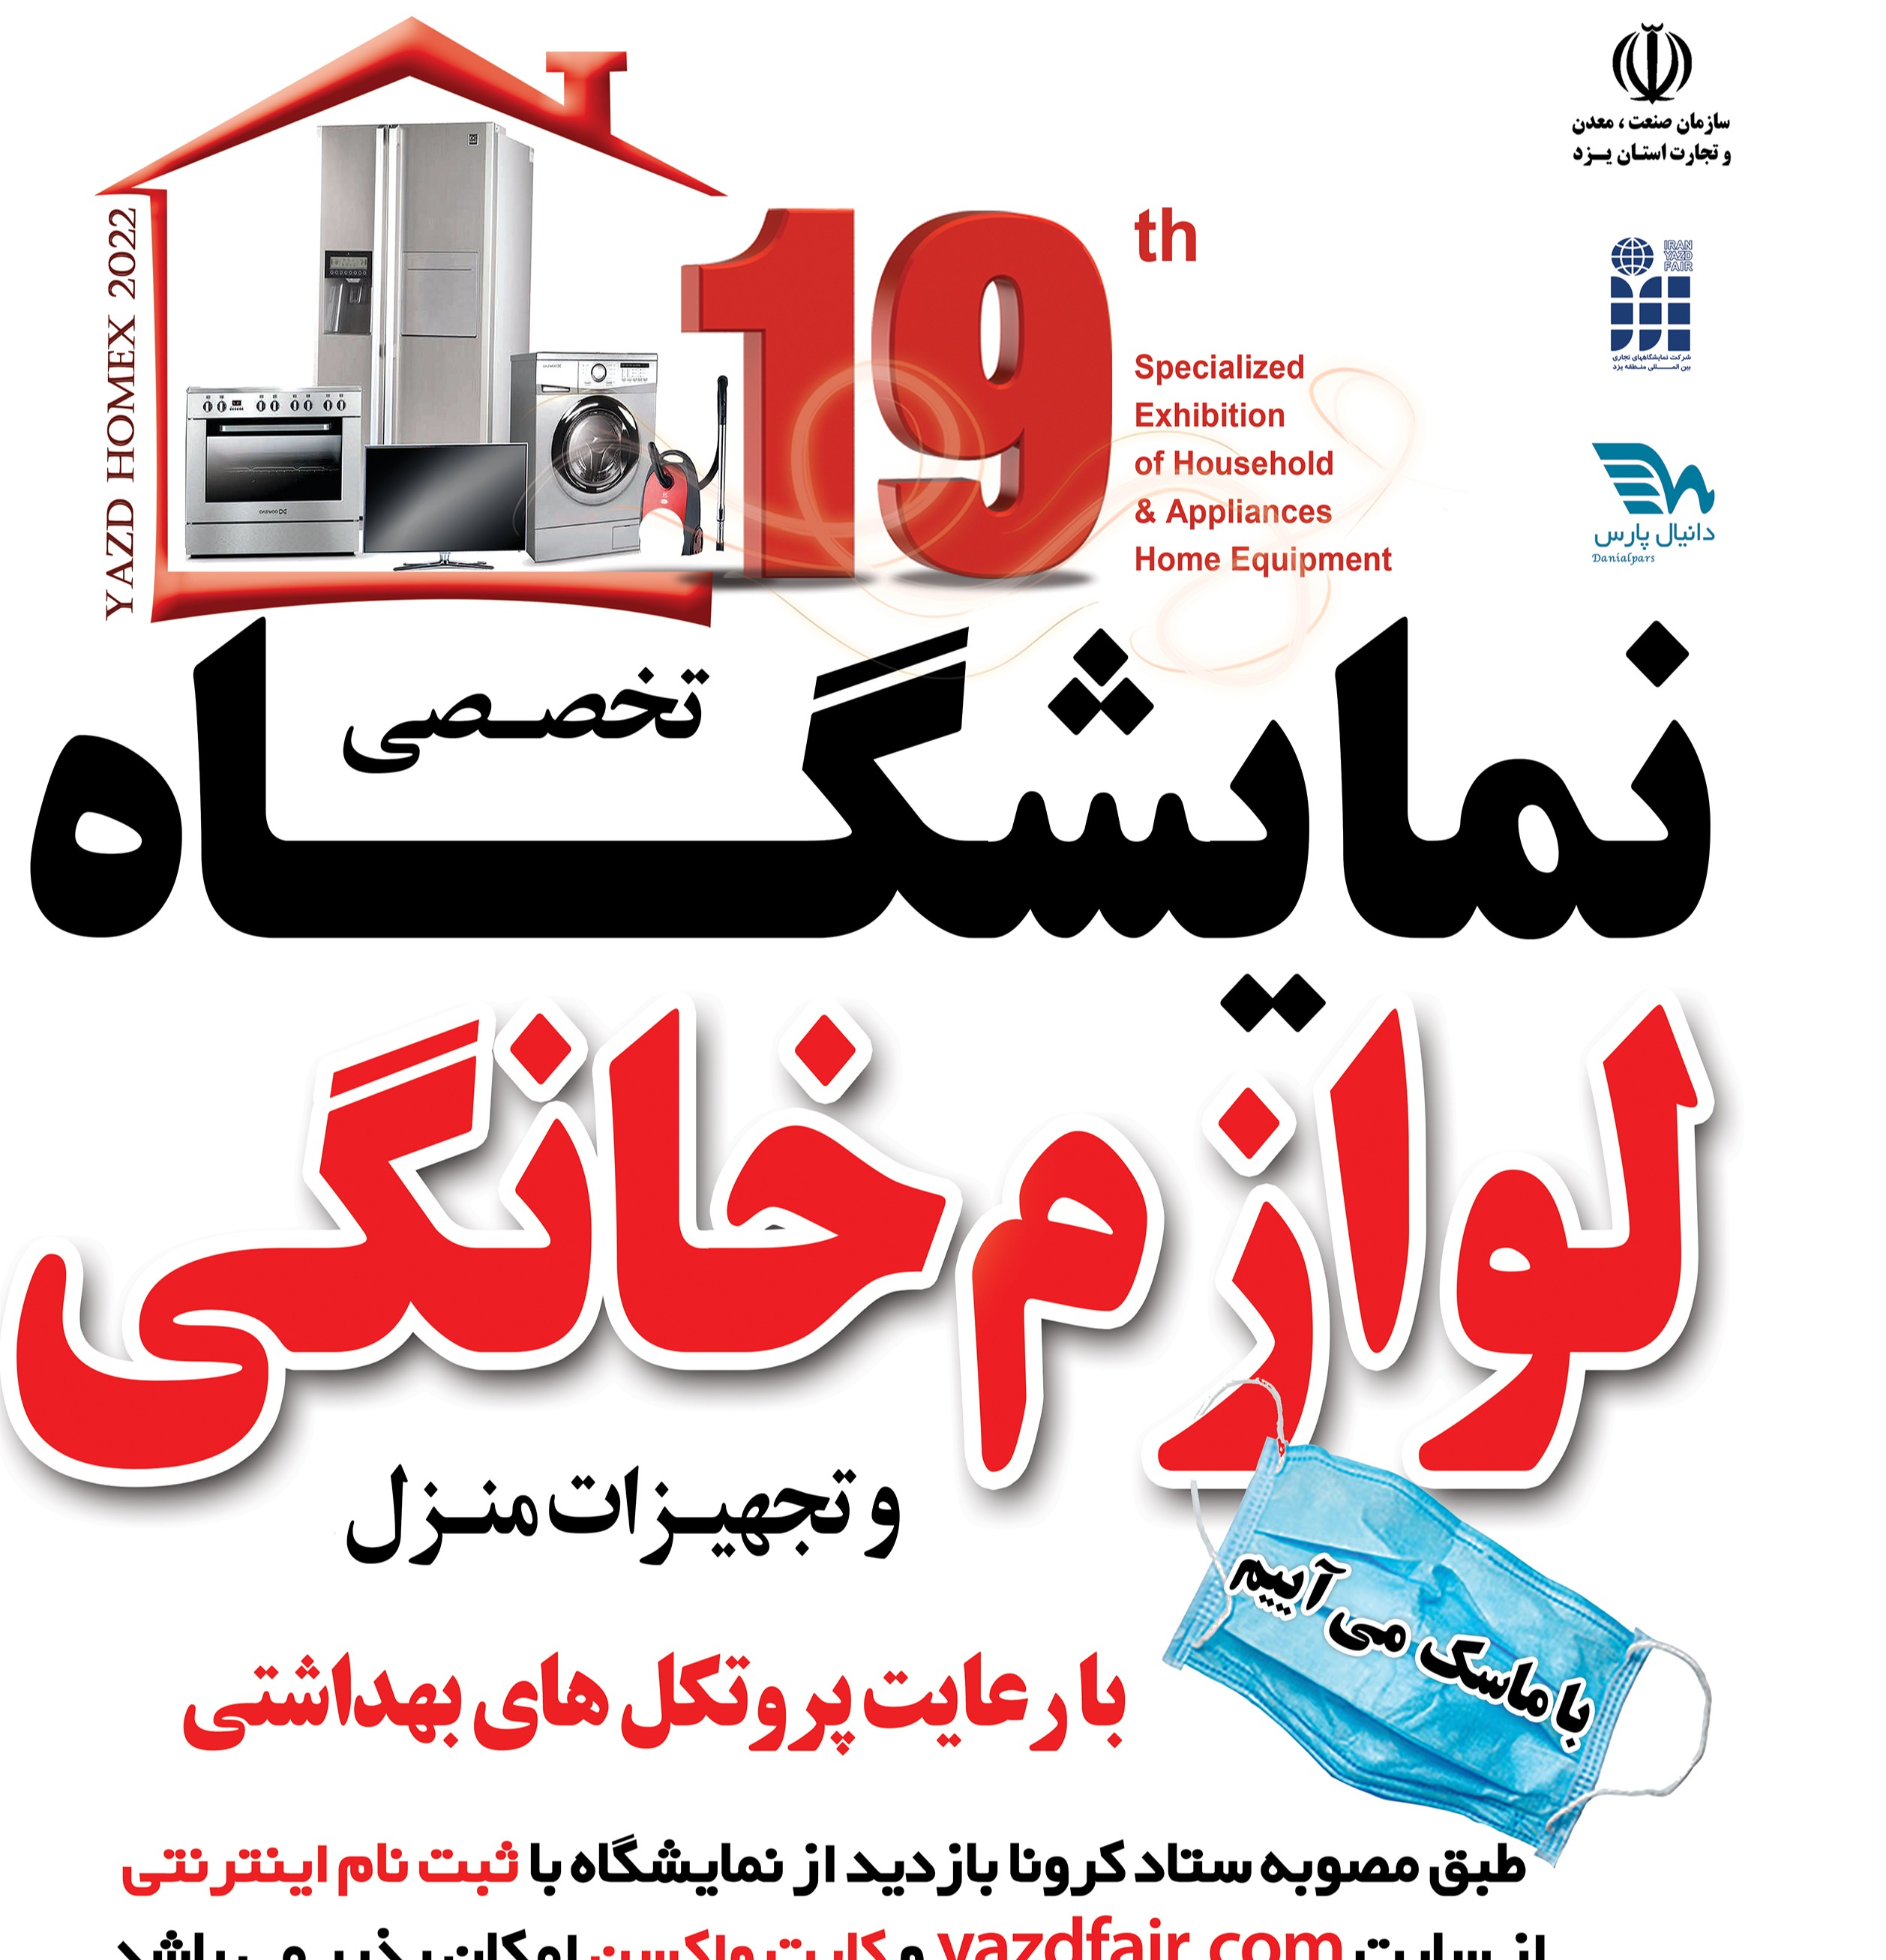 نمایشگاه لوازم خانگی و تجهیزات منزل در یزد برگزار می شود